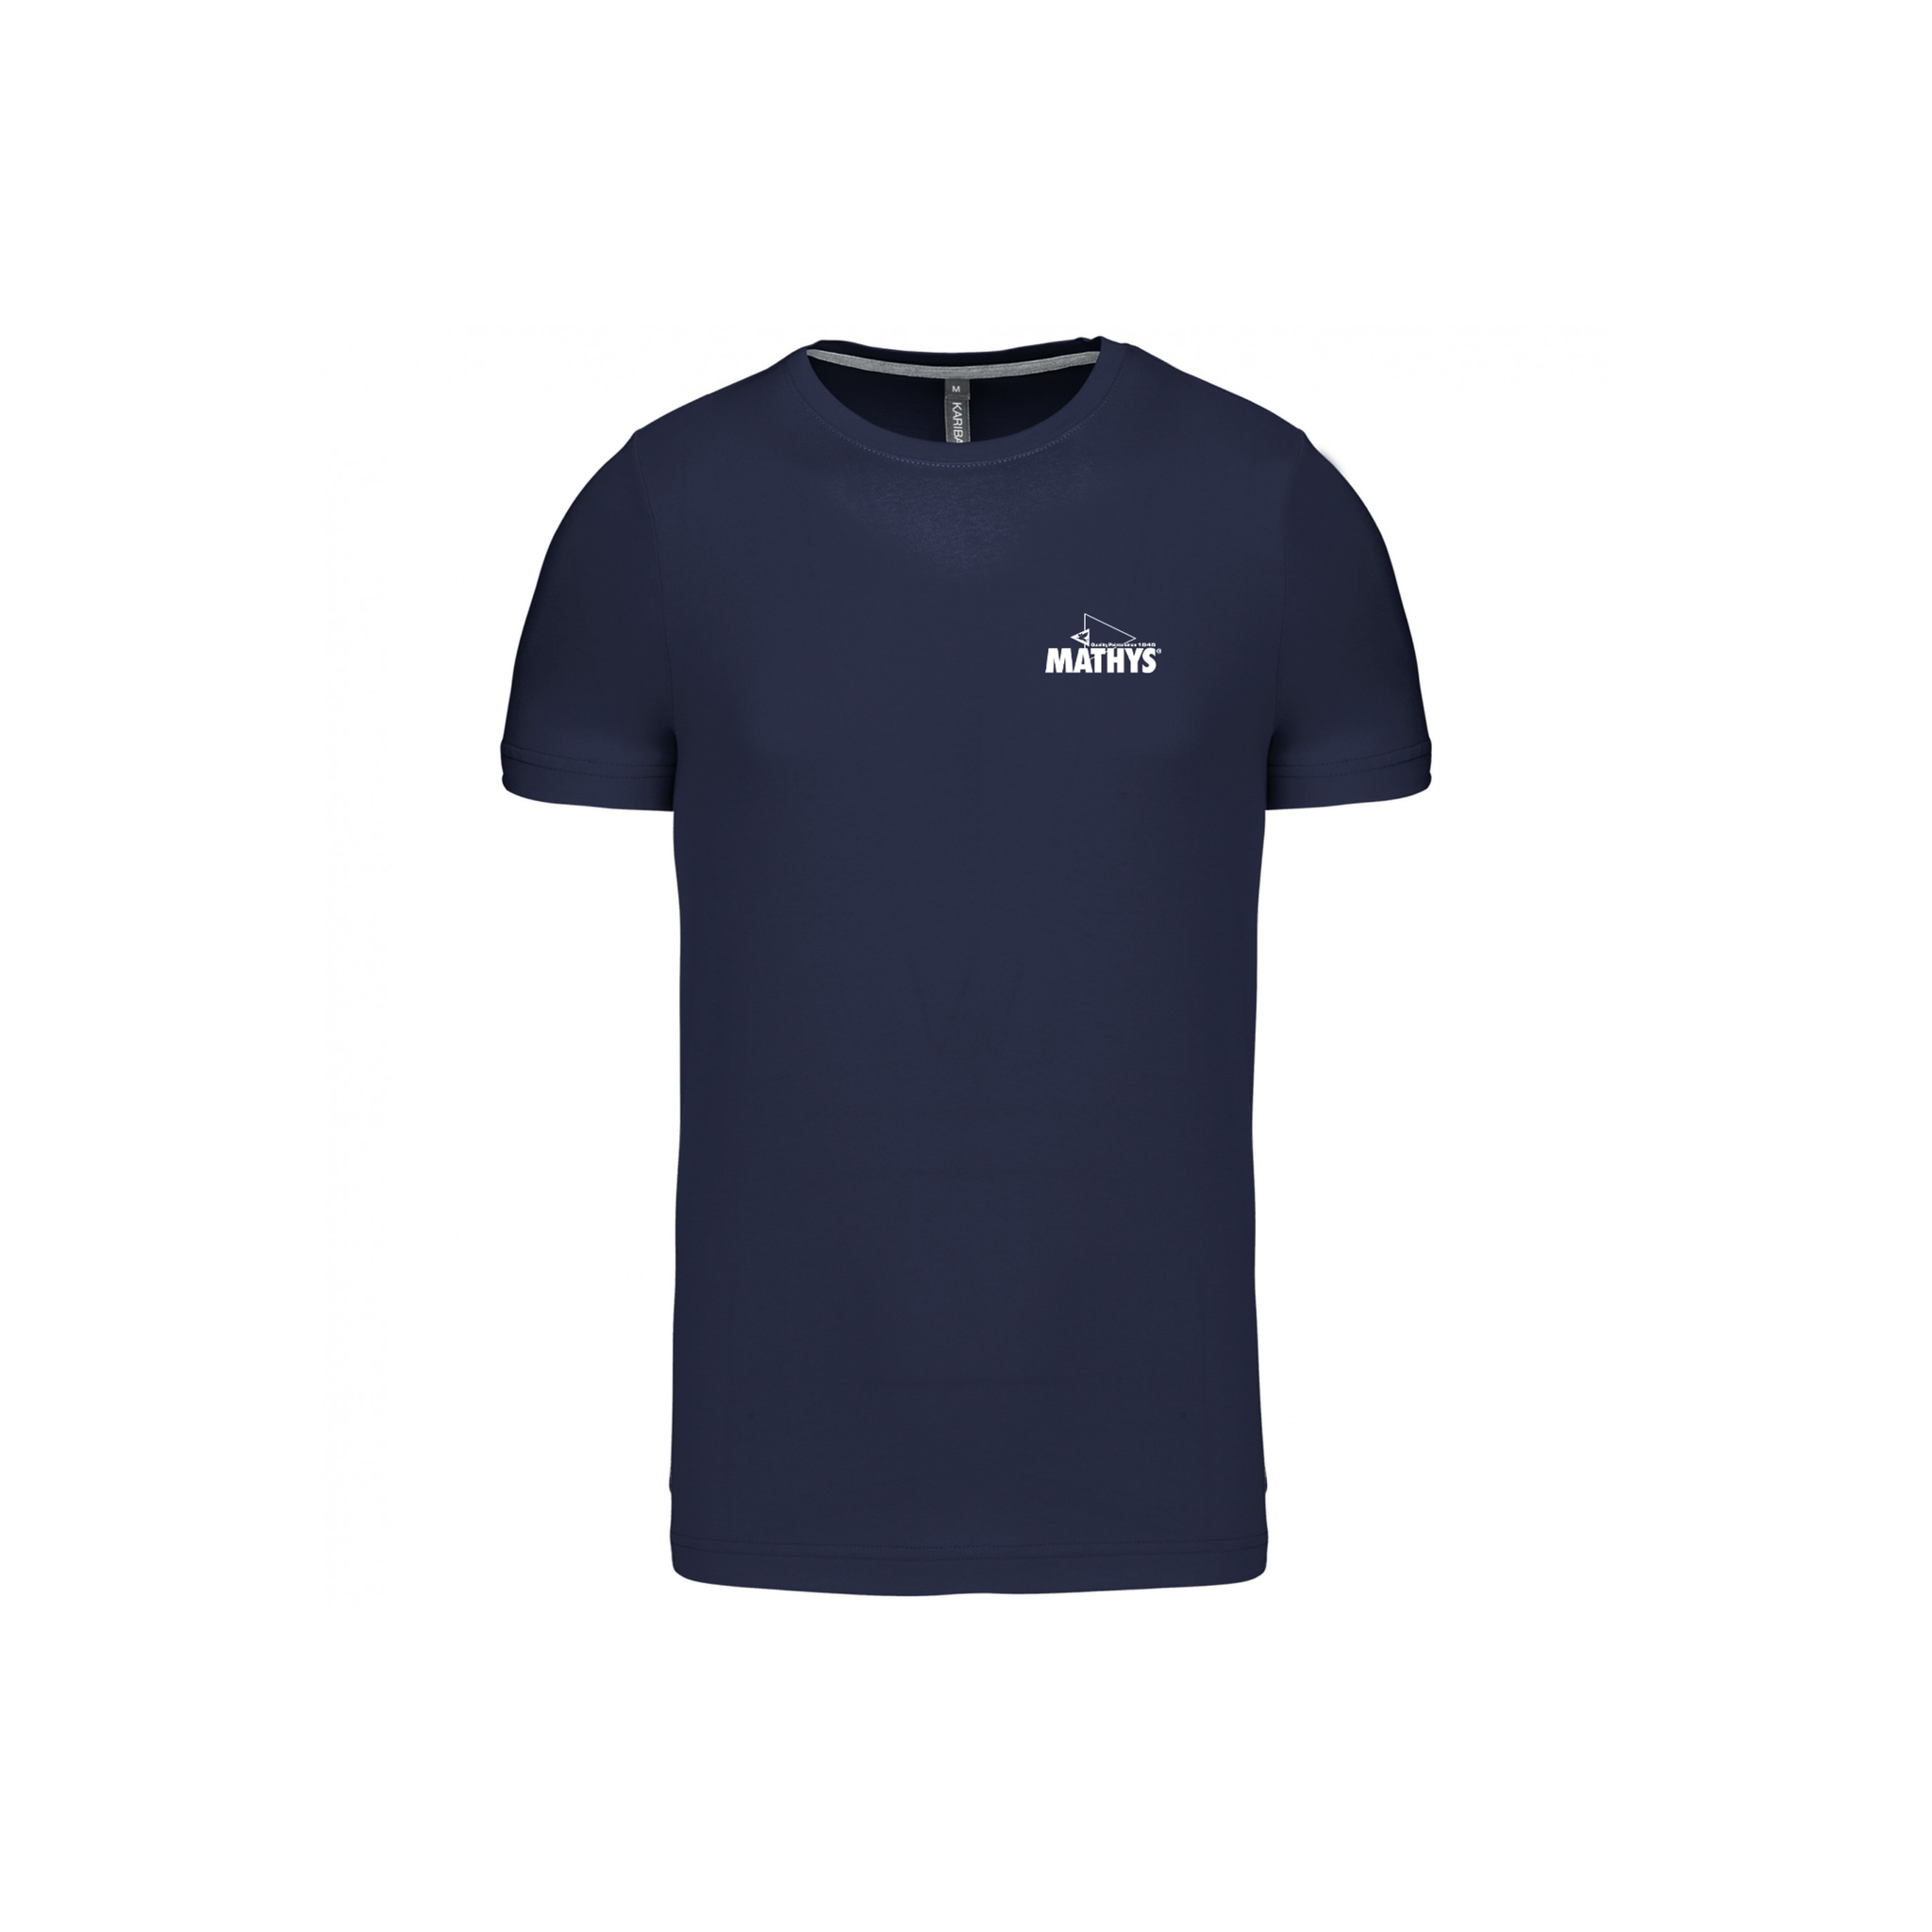 Topfanz t-shirt navy Mathys men